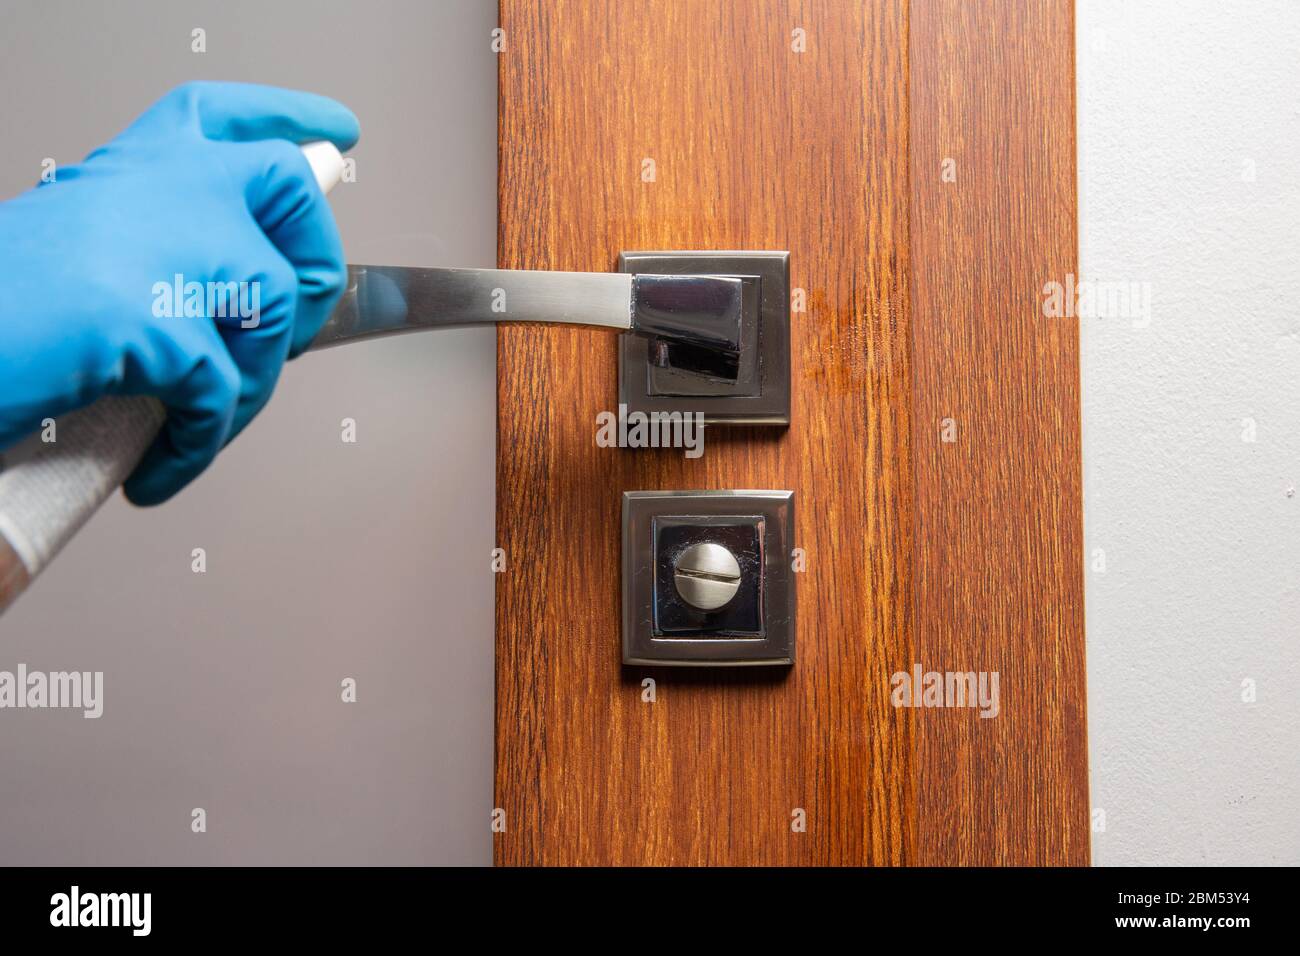 Désinfectez et nettoyez la poignée de porte avec un spray et un chiffon, prévention de la propagation des virus Banque D'Images